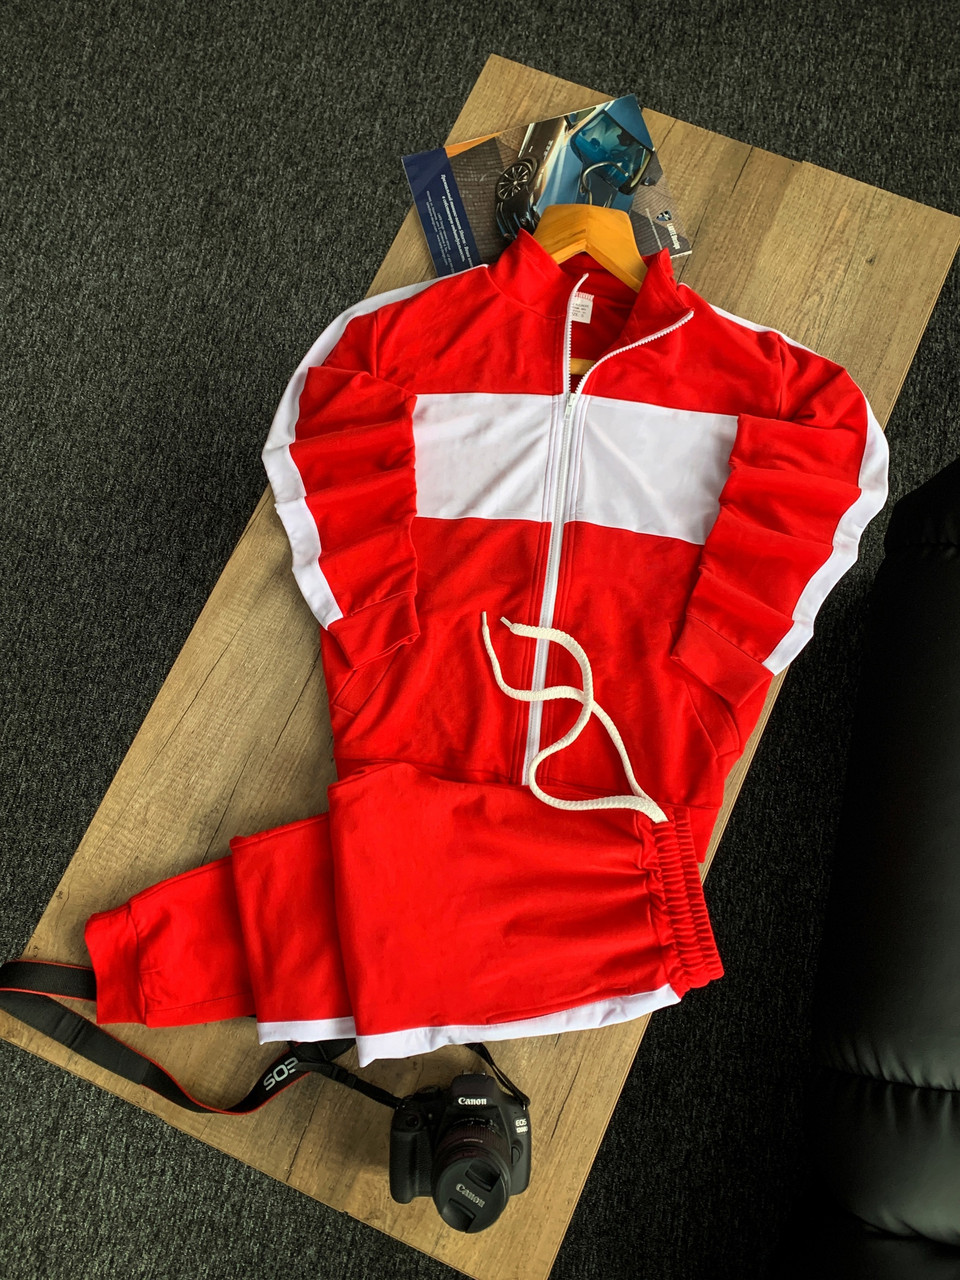 

Спортивный костюм мужской трикотажный с лампасами Balance красный весенний осенний Комплект Олимпийка + Штаны